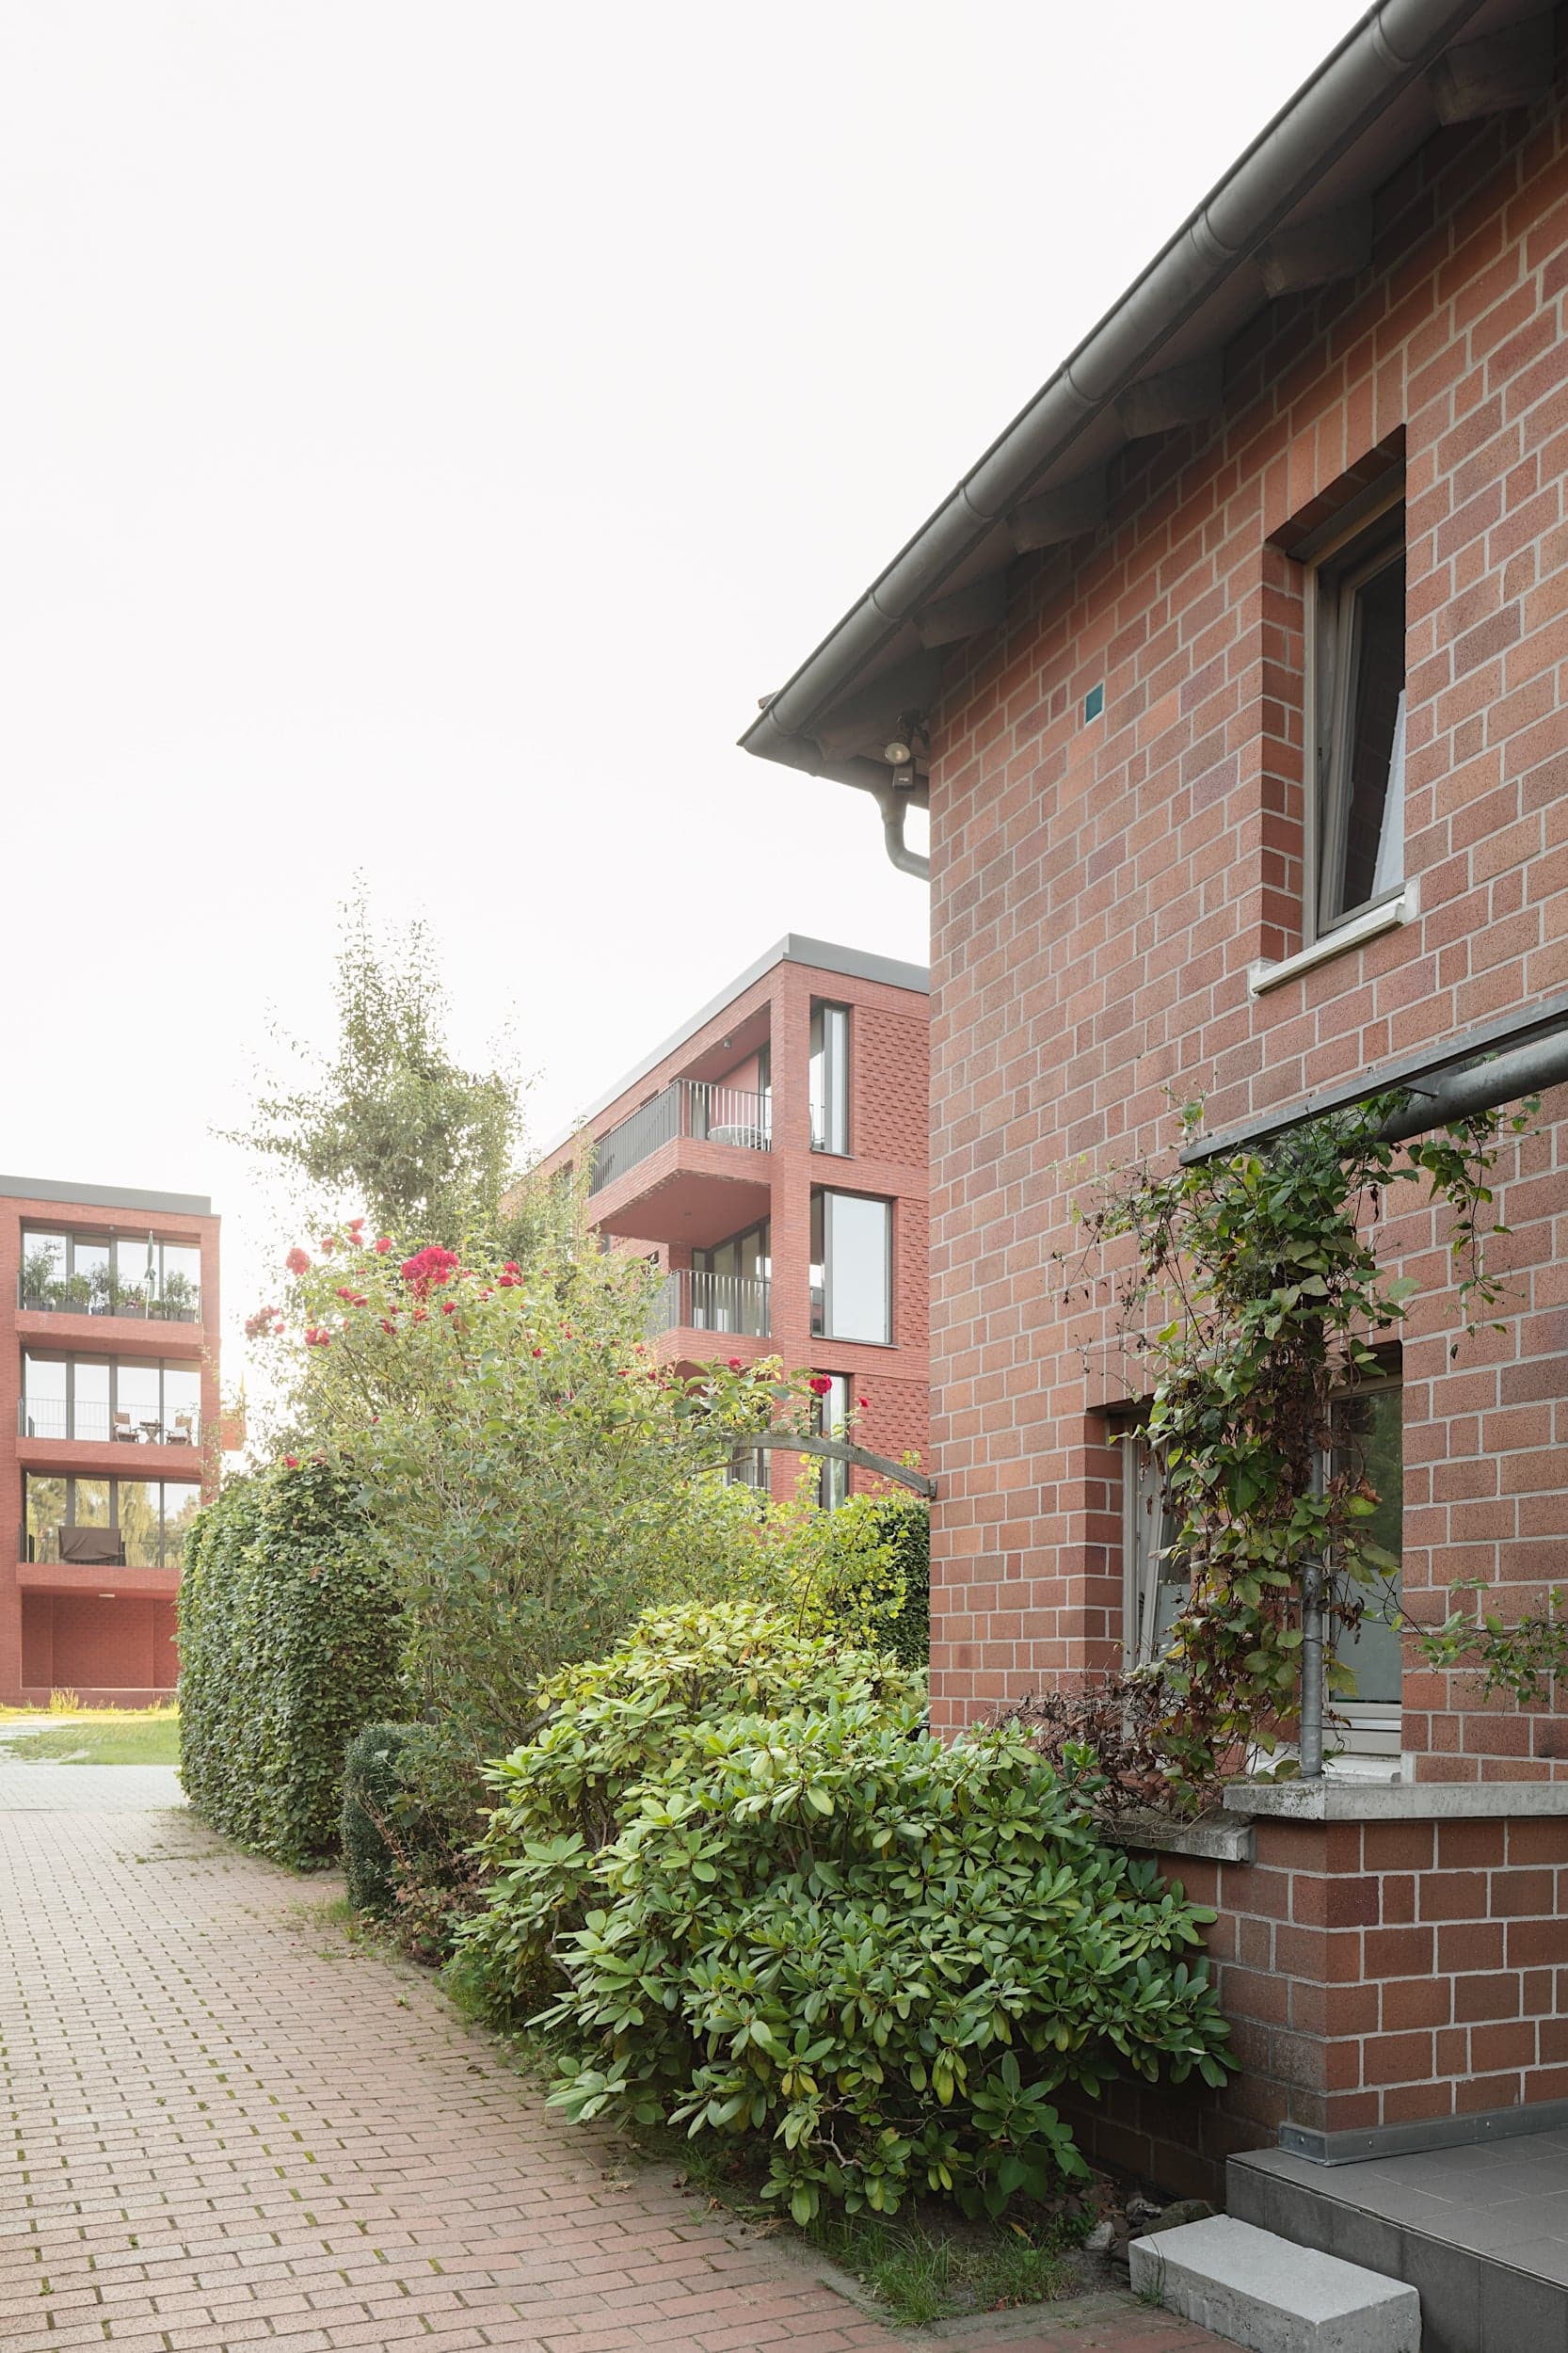 Deutscher Architekturpreis 2021 geht an SMAQ und lad+ für das Wohnbauprojekt "Zusammen wohnen" in Hannover. Foto: Schnepp Renou